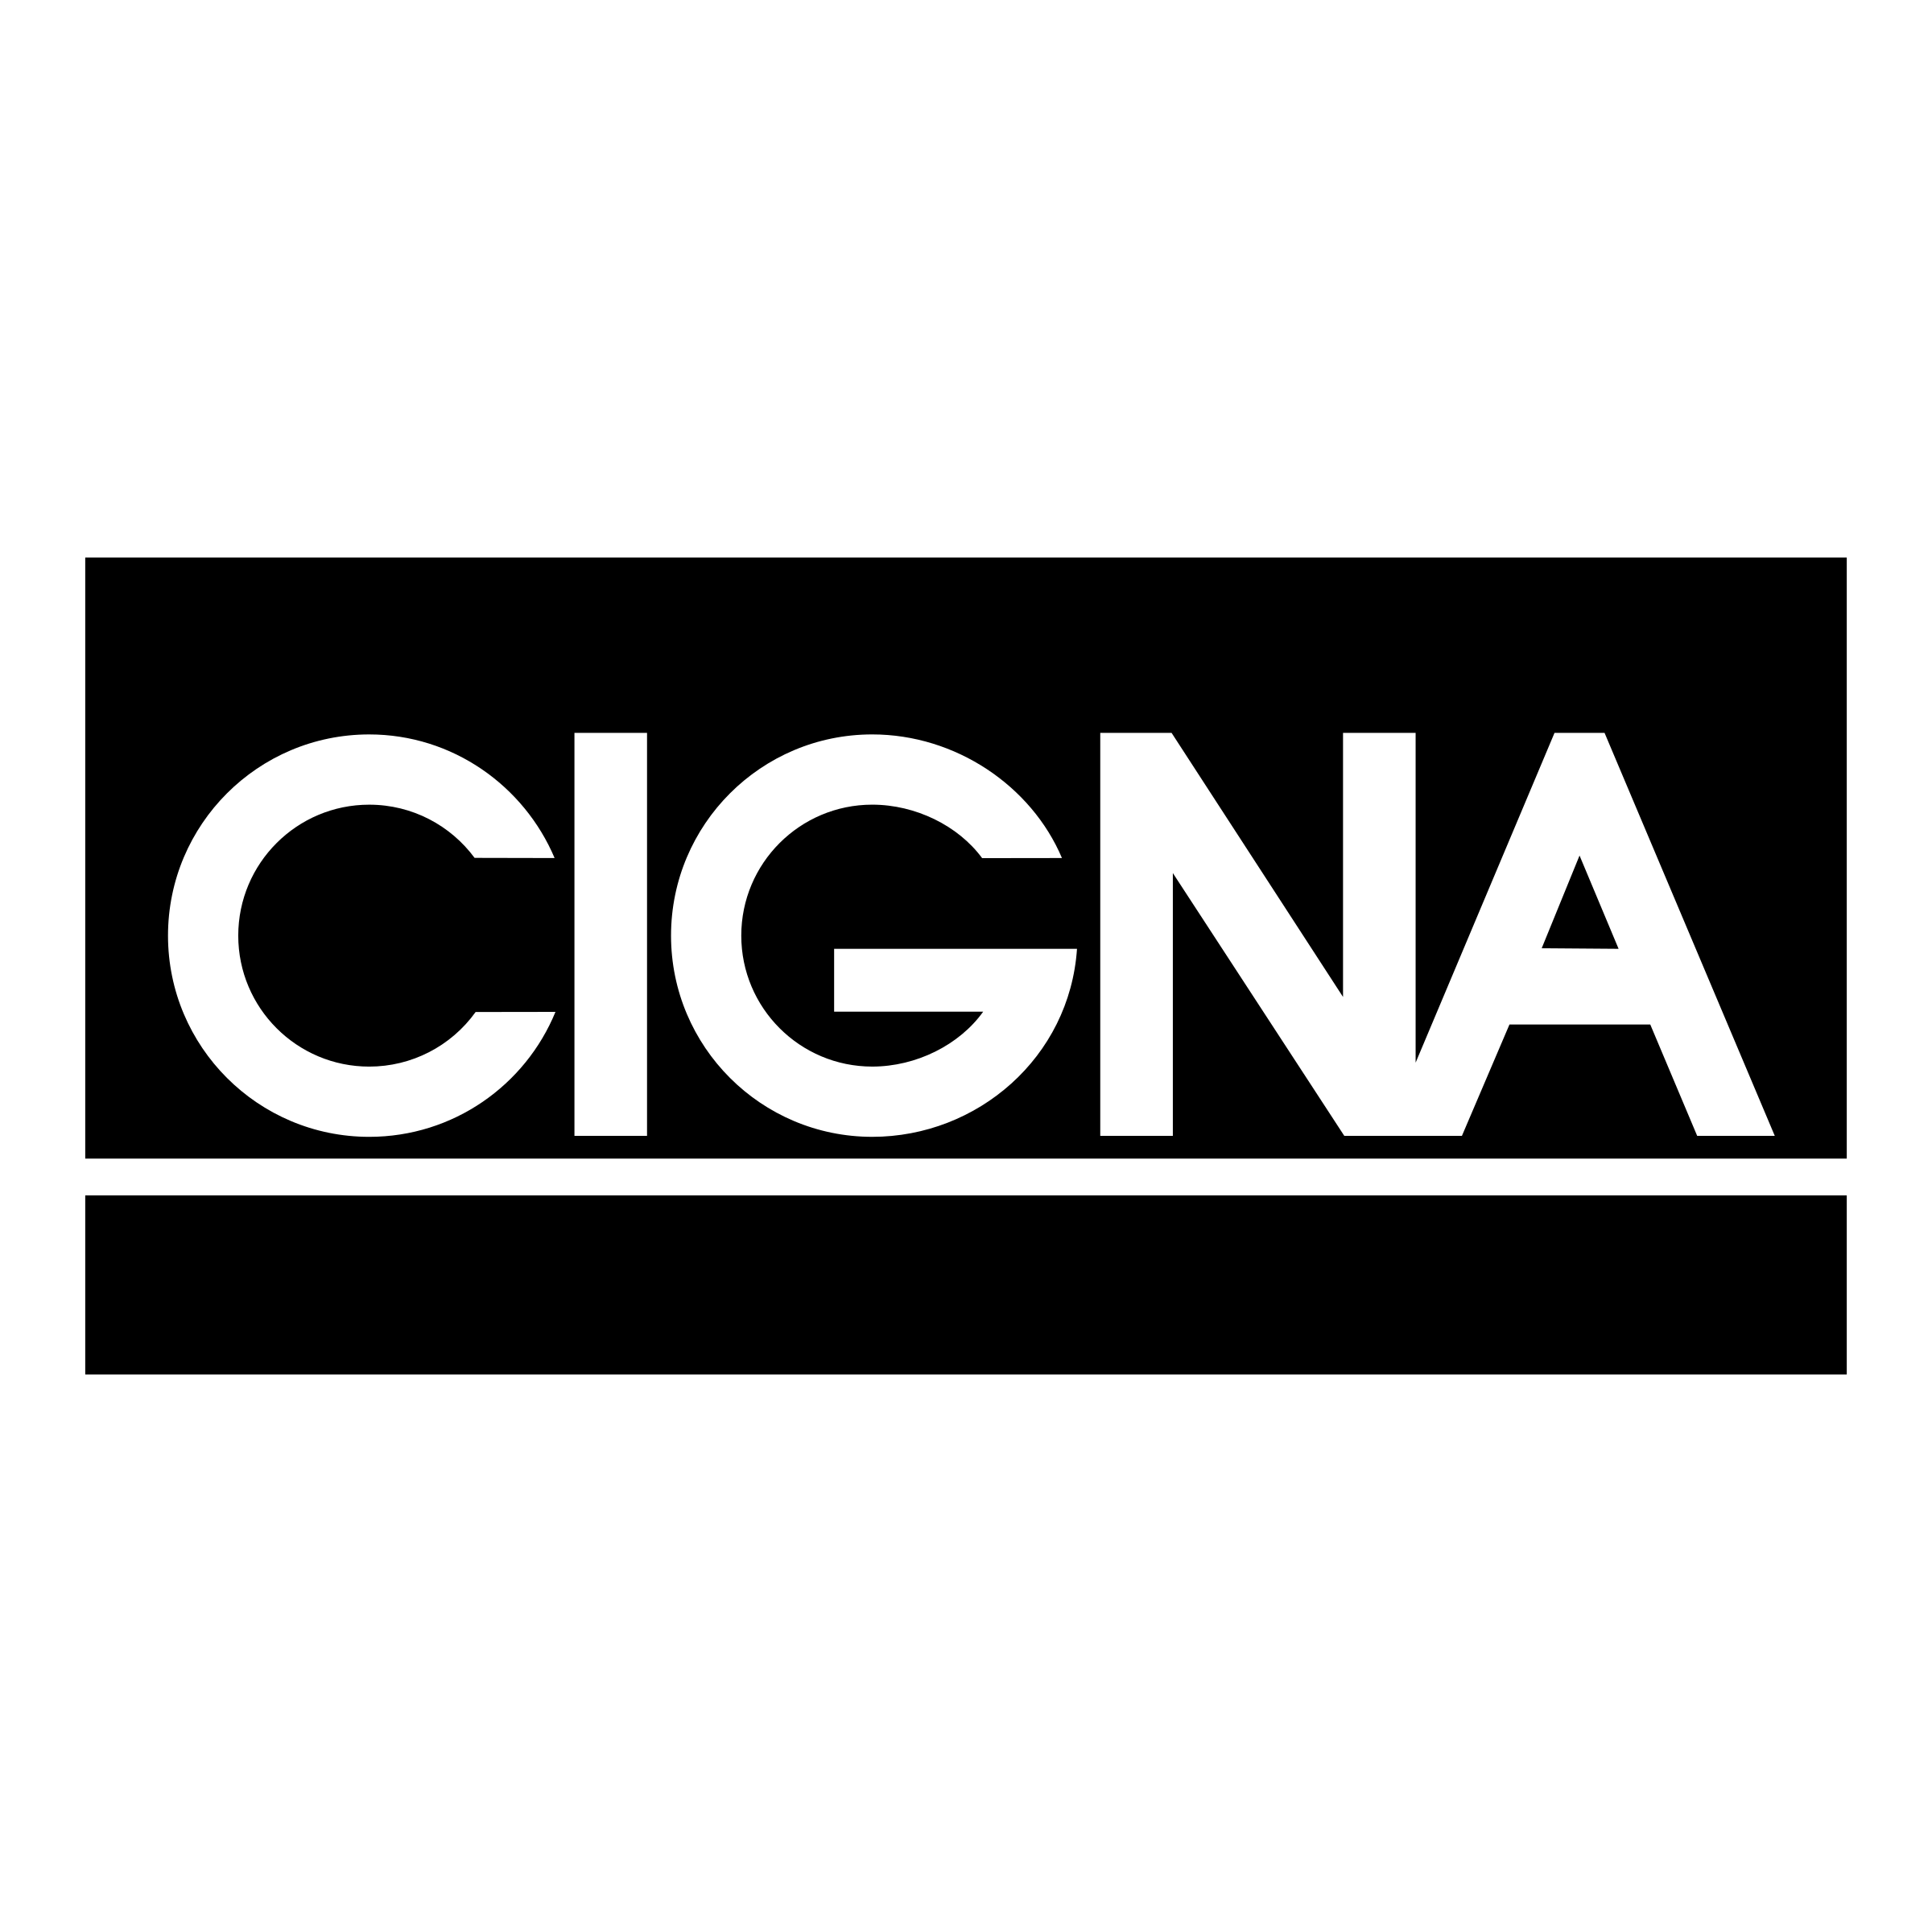 Cigna logo PNG картина